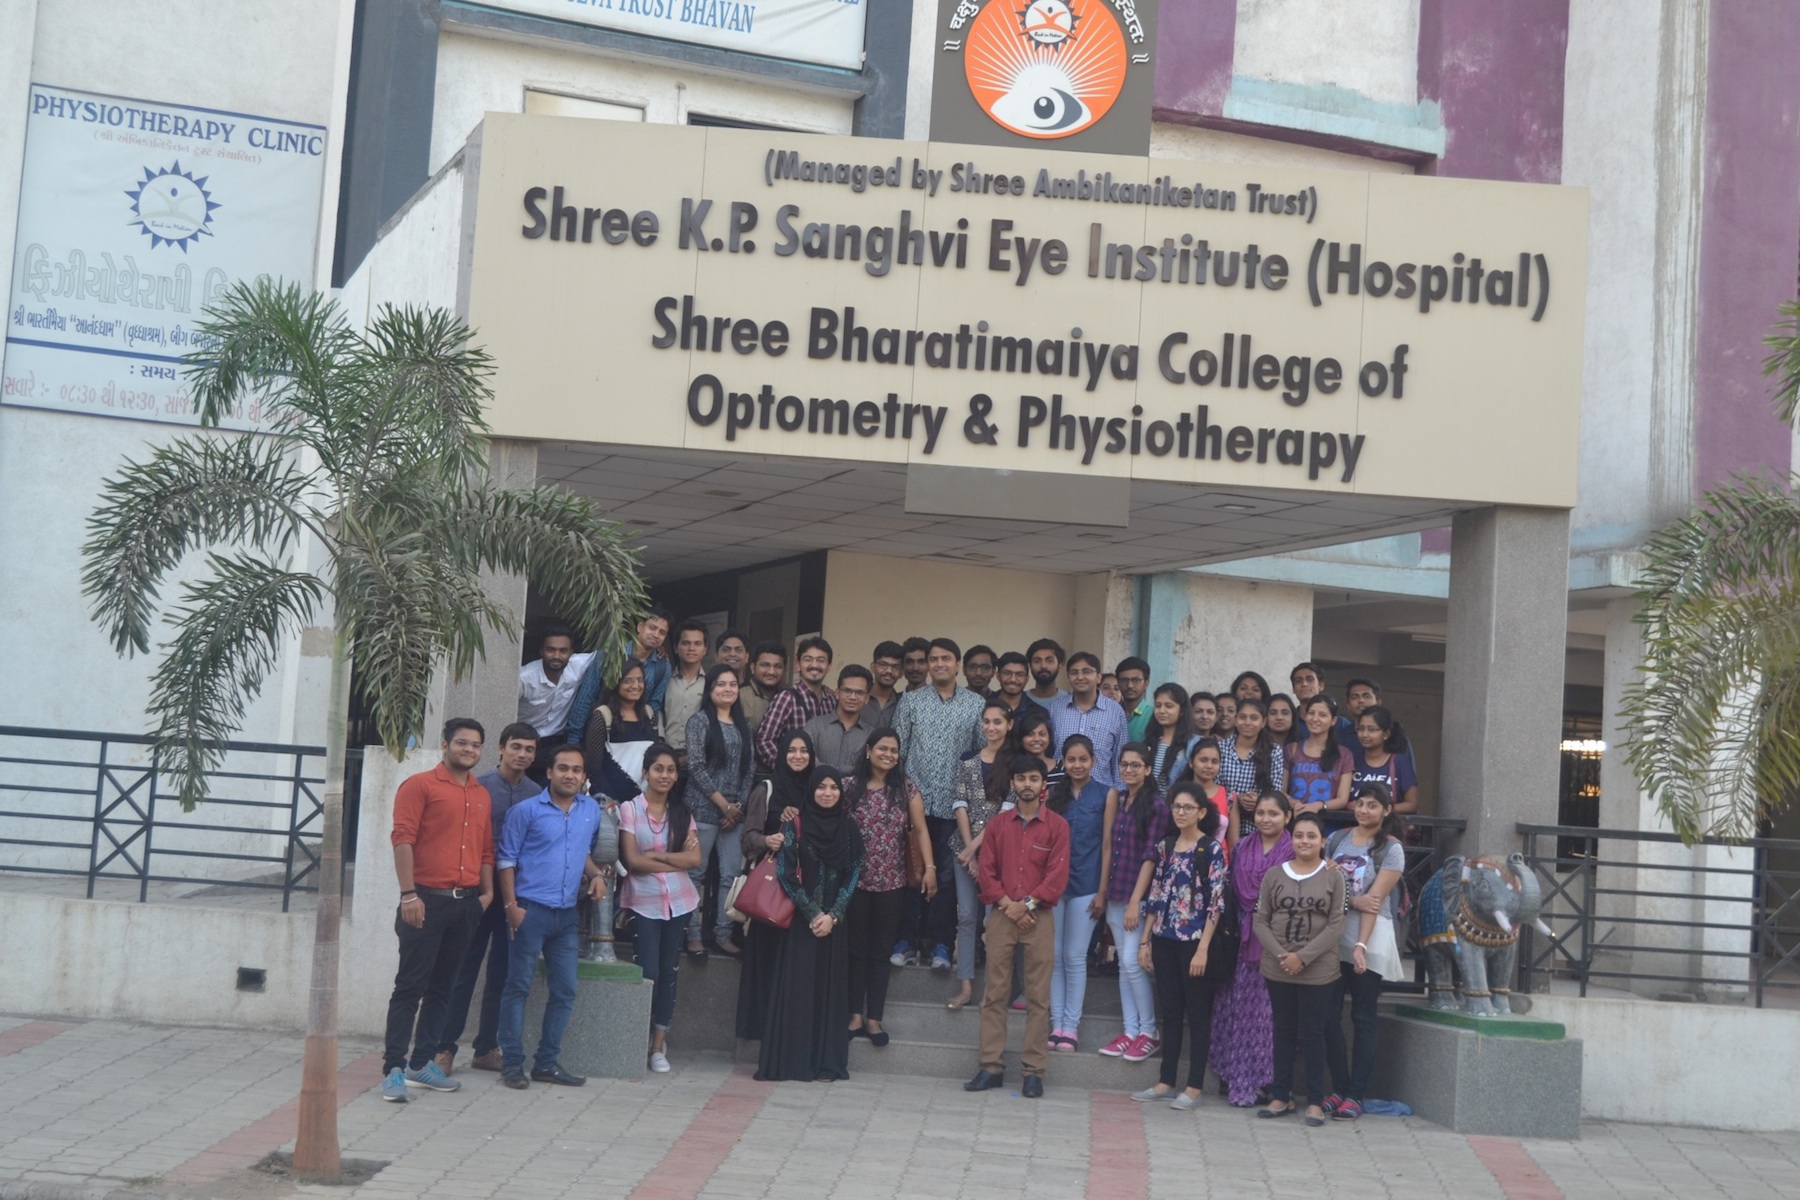 Bharatimaiya College of Optometry